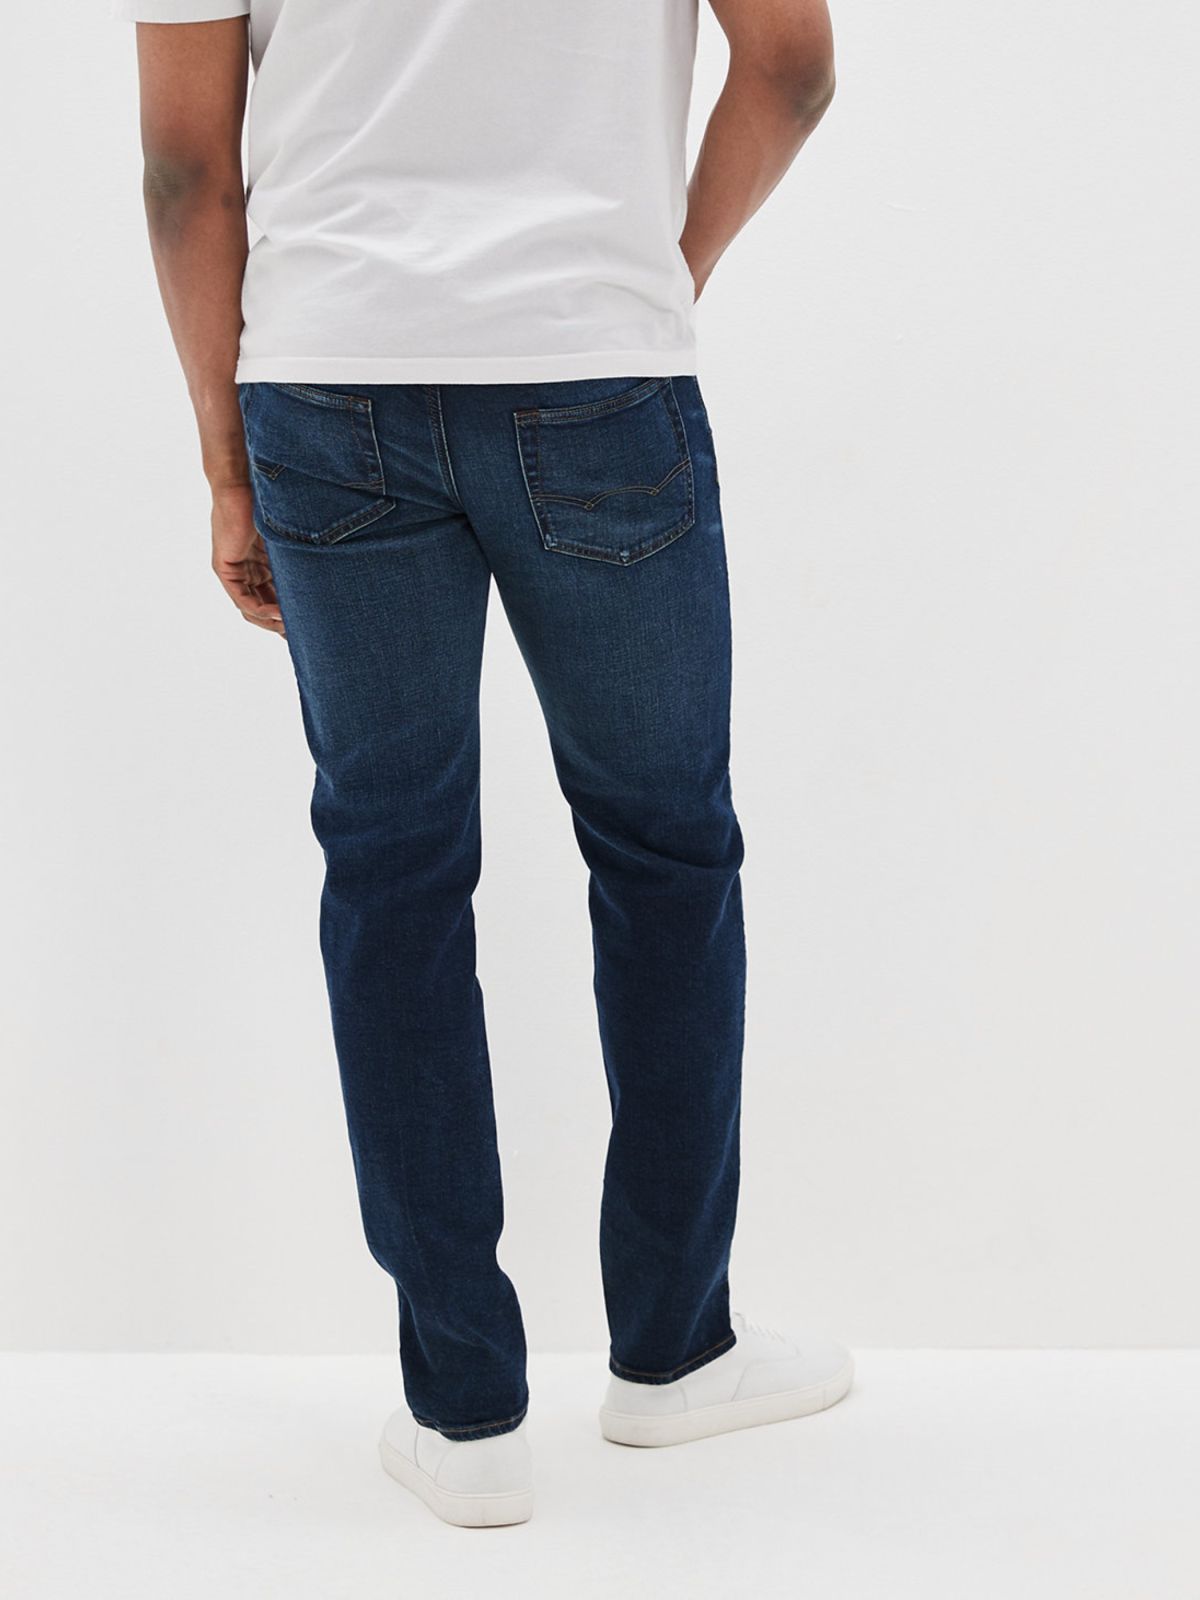  ג'ינס בגזרת Slim ישרה של AMERICAN EAGLE